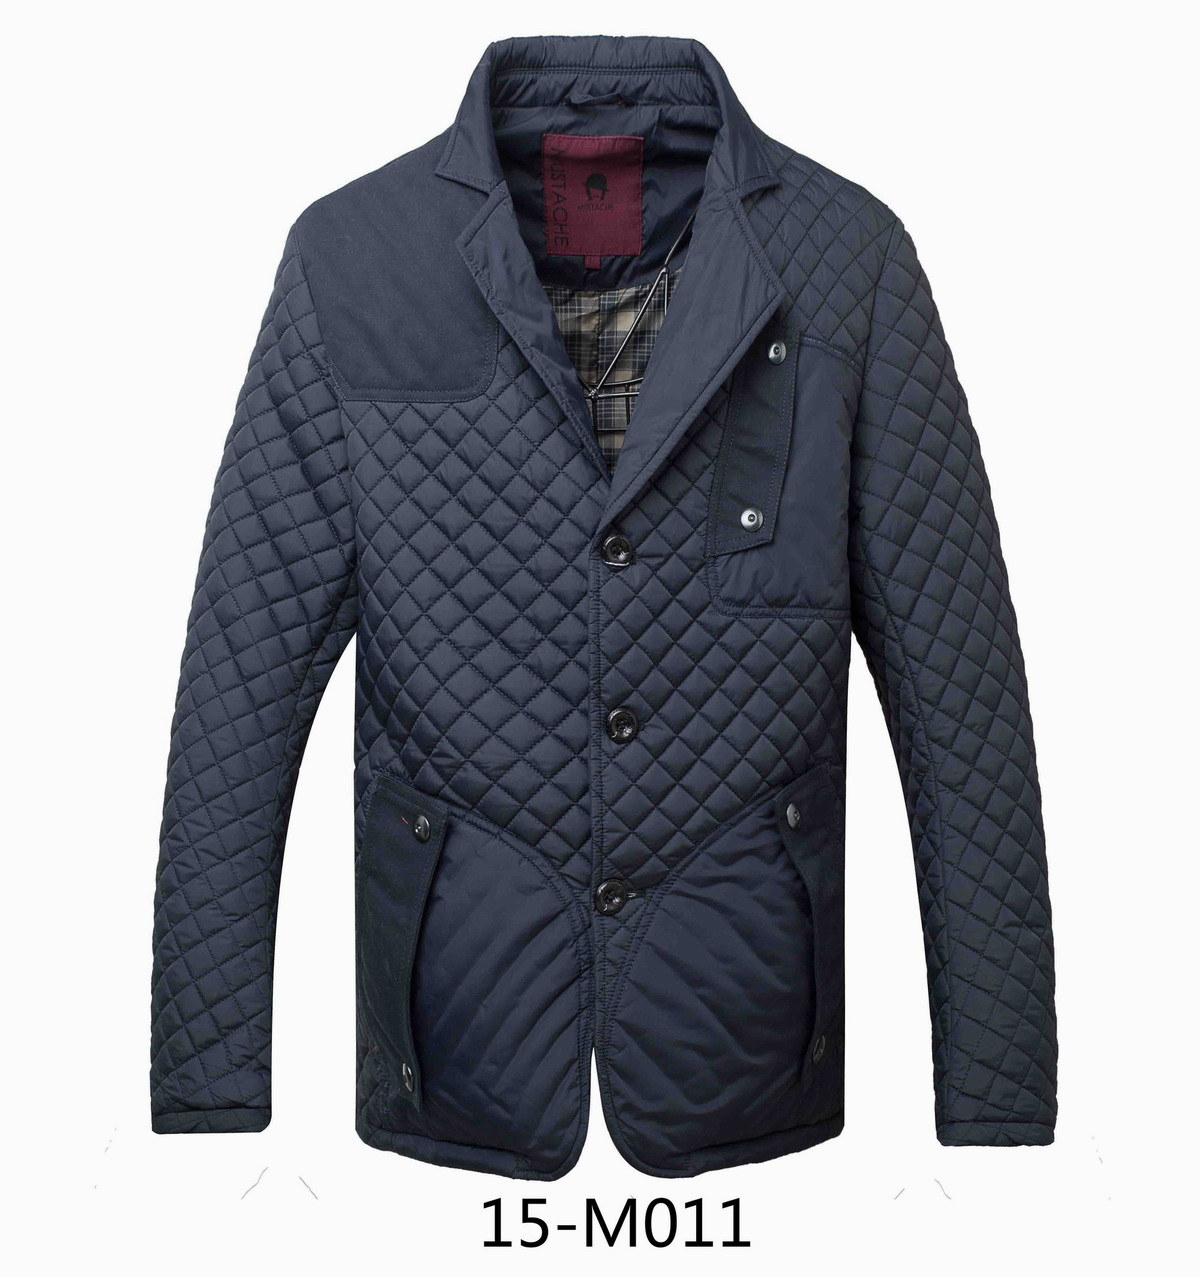 Men's Casual (leisure) Blazer Suit (15-M011)